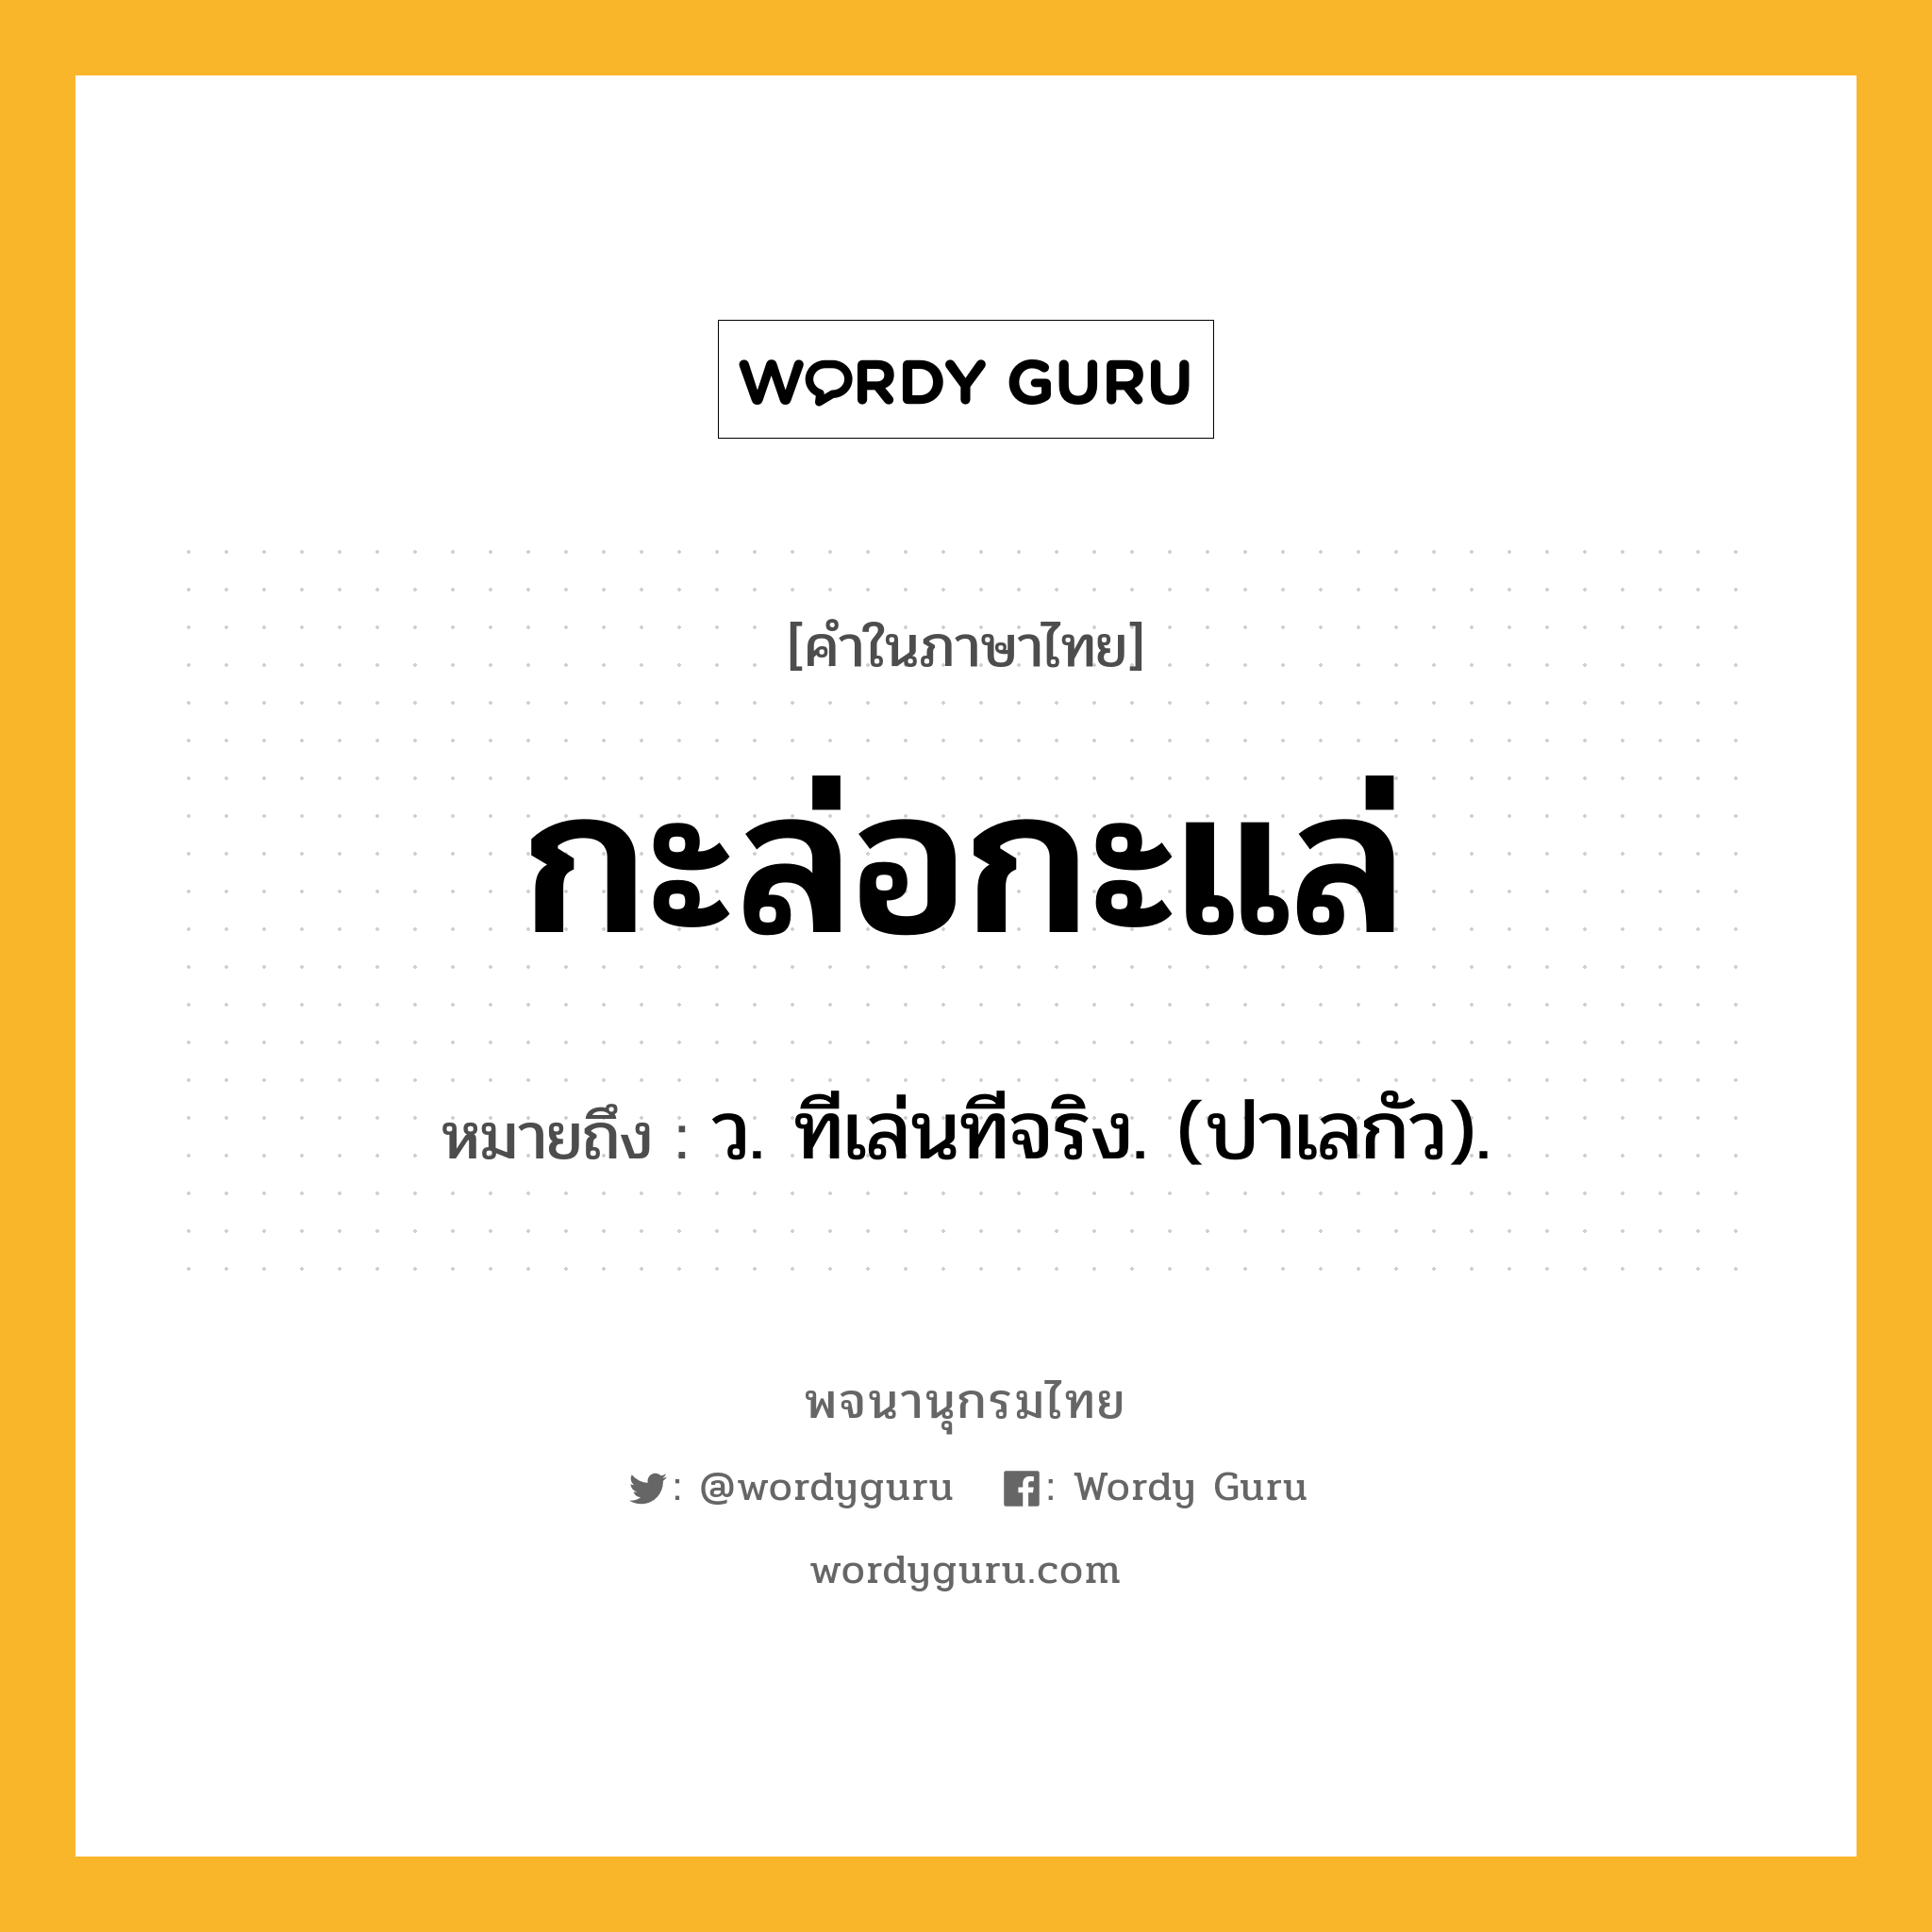 กะล่อกะแล่ หมายถึงอะไร?, คำในภาษาไทย กะล่อกะแล่ หมายถึง ว. ทีเล่นทีจริง. (ปาเลกัว).